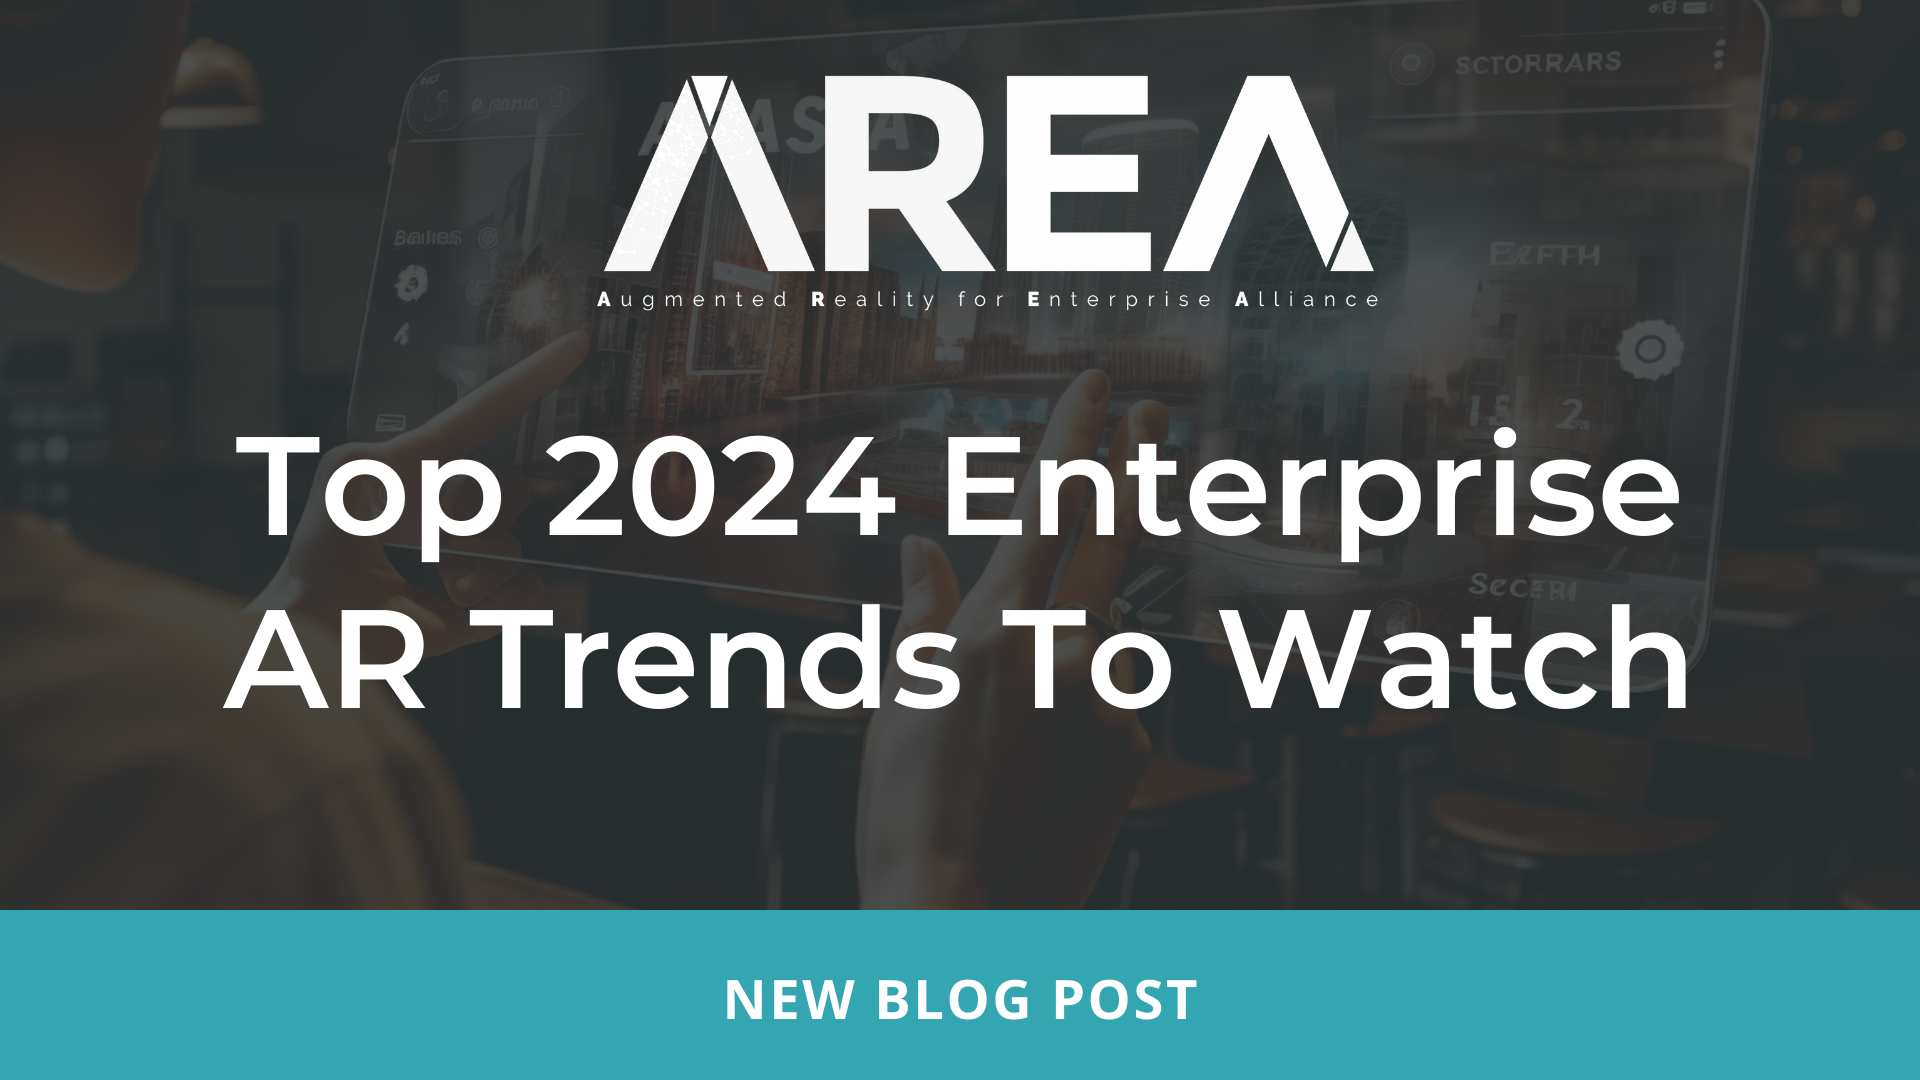 Najpopularniejsze trendy AR w przedsiębiorstwach w 2024 r. do obejrzenia – OBSZAR